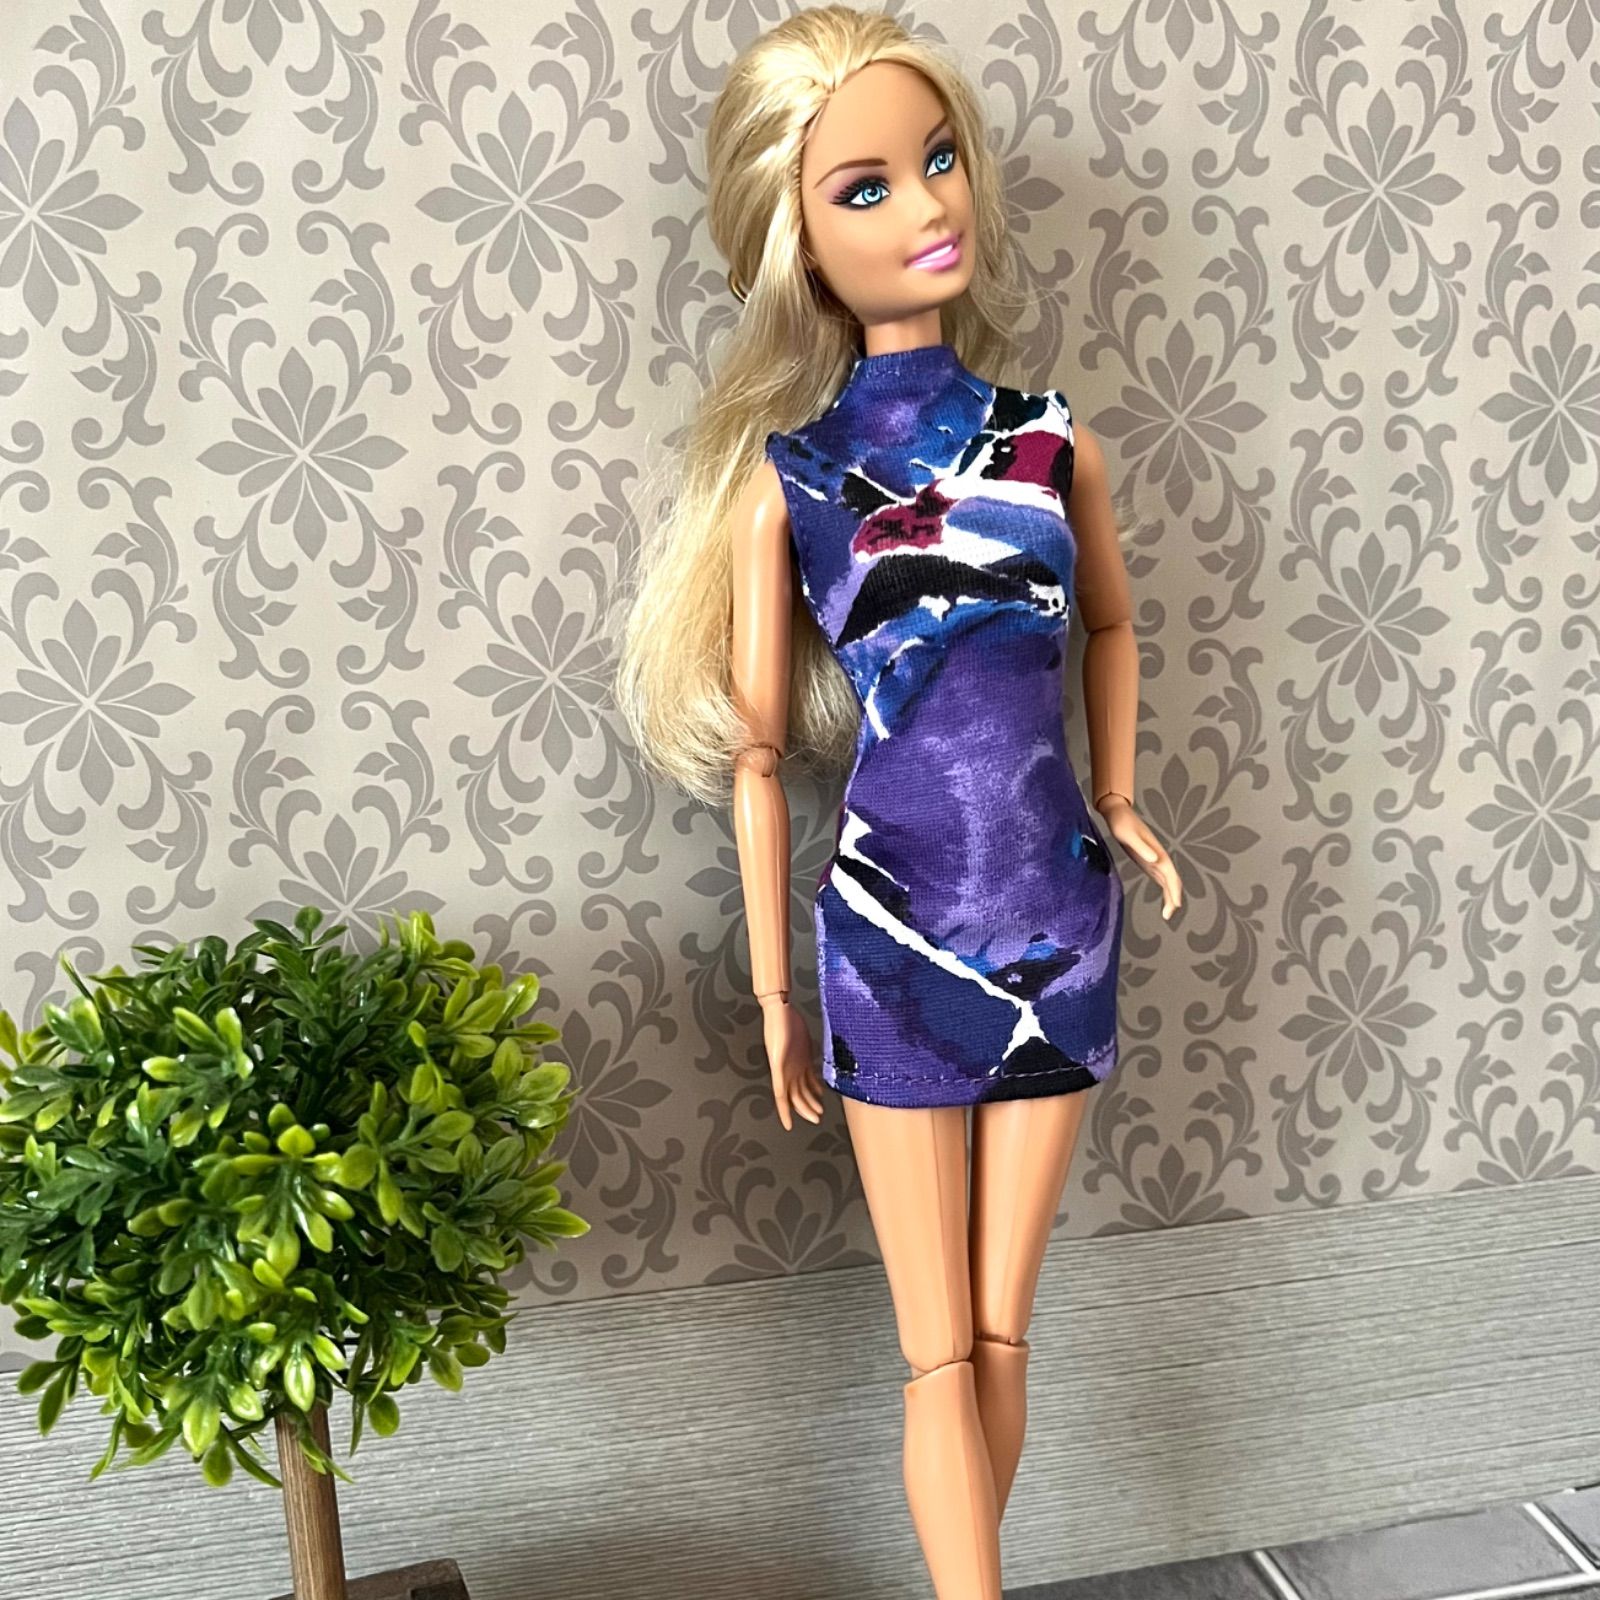 開店祝い doll topmodel Barbie バービー人形 topmodel Barbie doll 